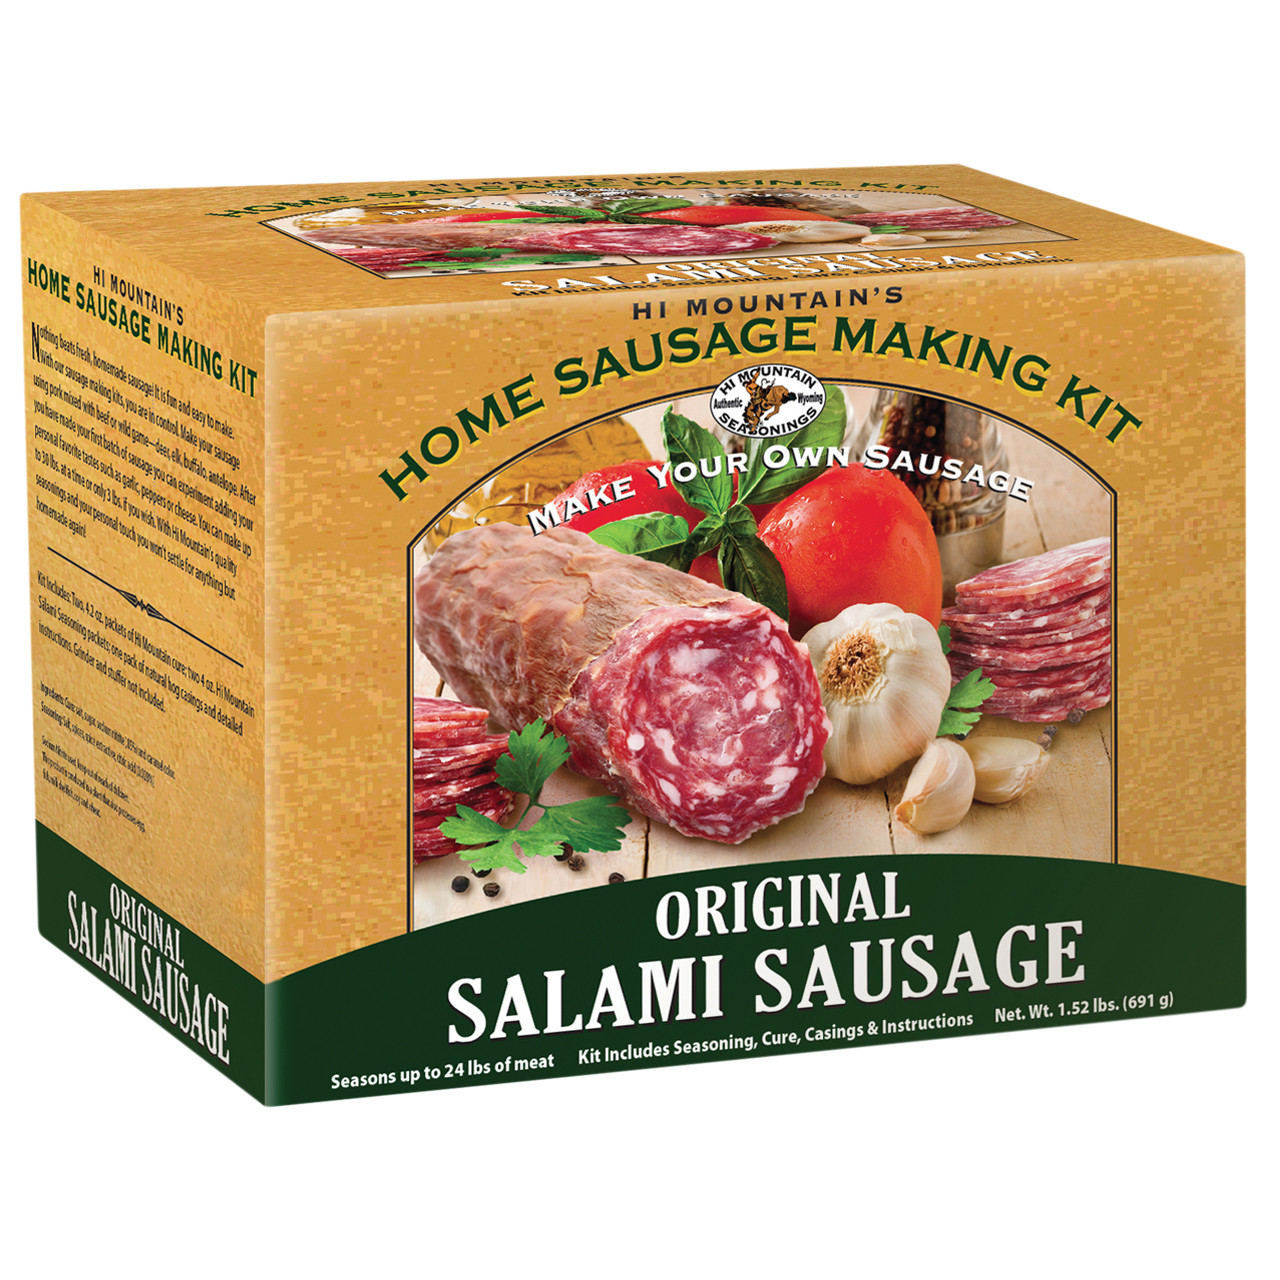 Hi Mountain Sausage Making Kit Original Salami Sausage 1.52lb